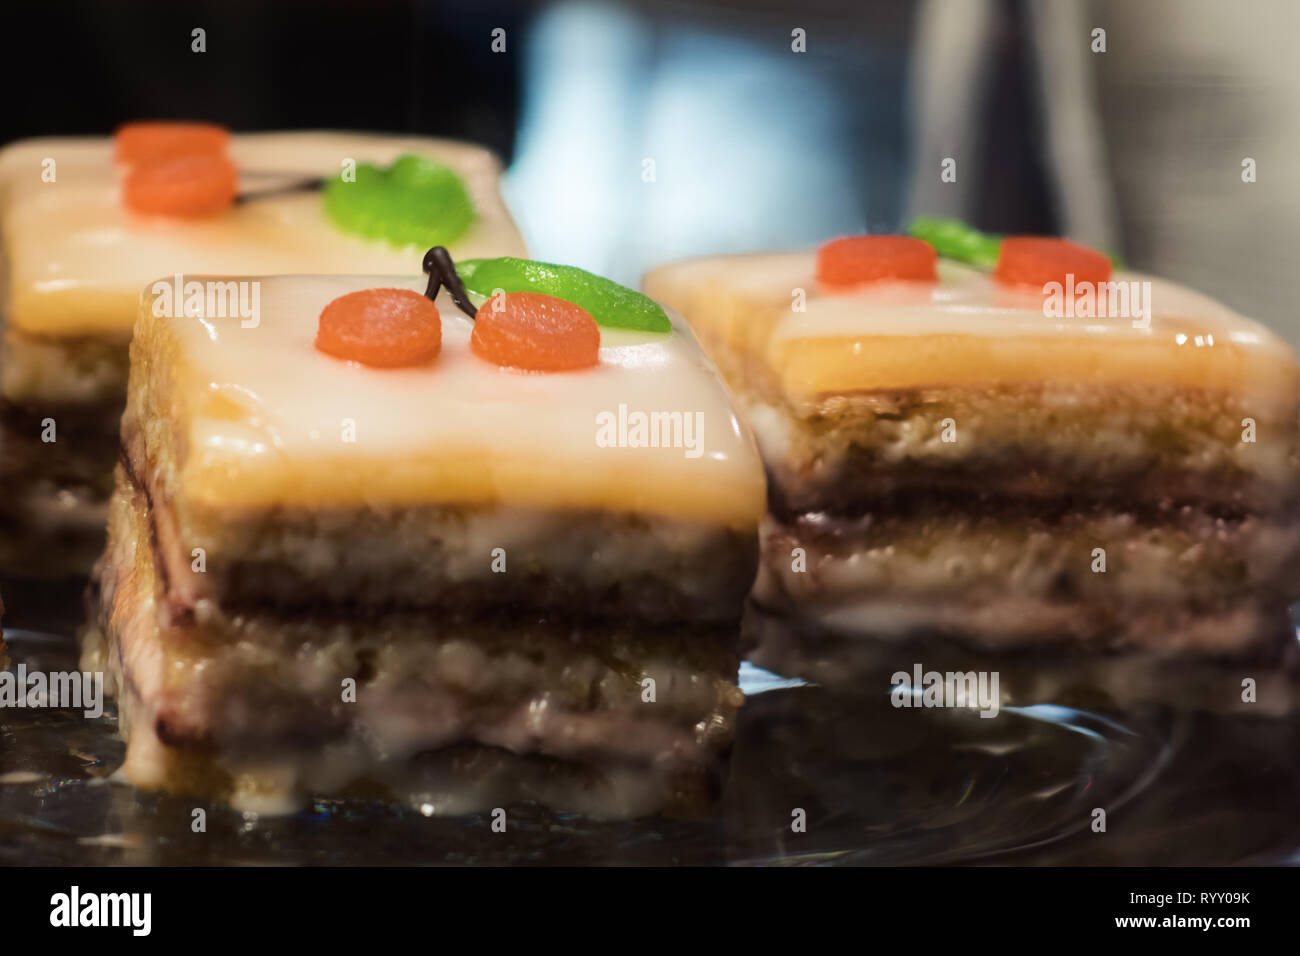 Süße Nachspeise mit Kirschen Dekoration - Kuchen, Kuchenstücke dessert la SLA Banque D'Images